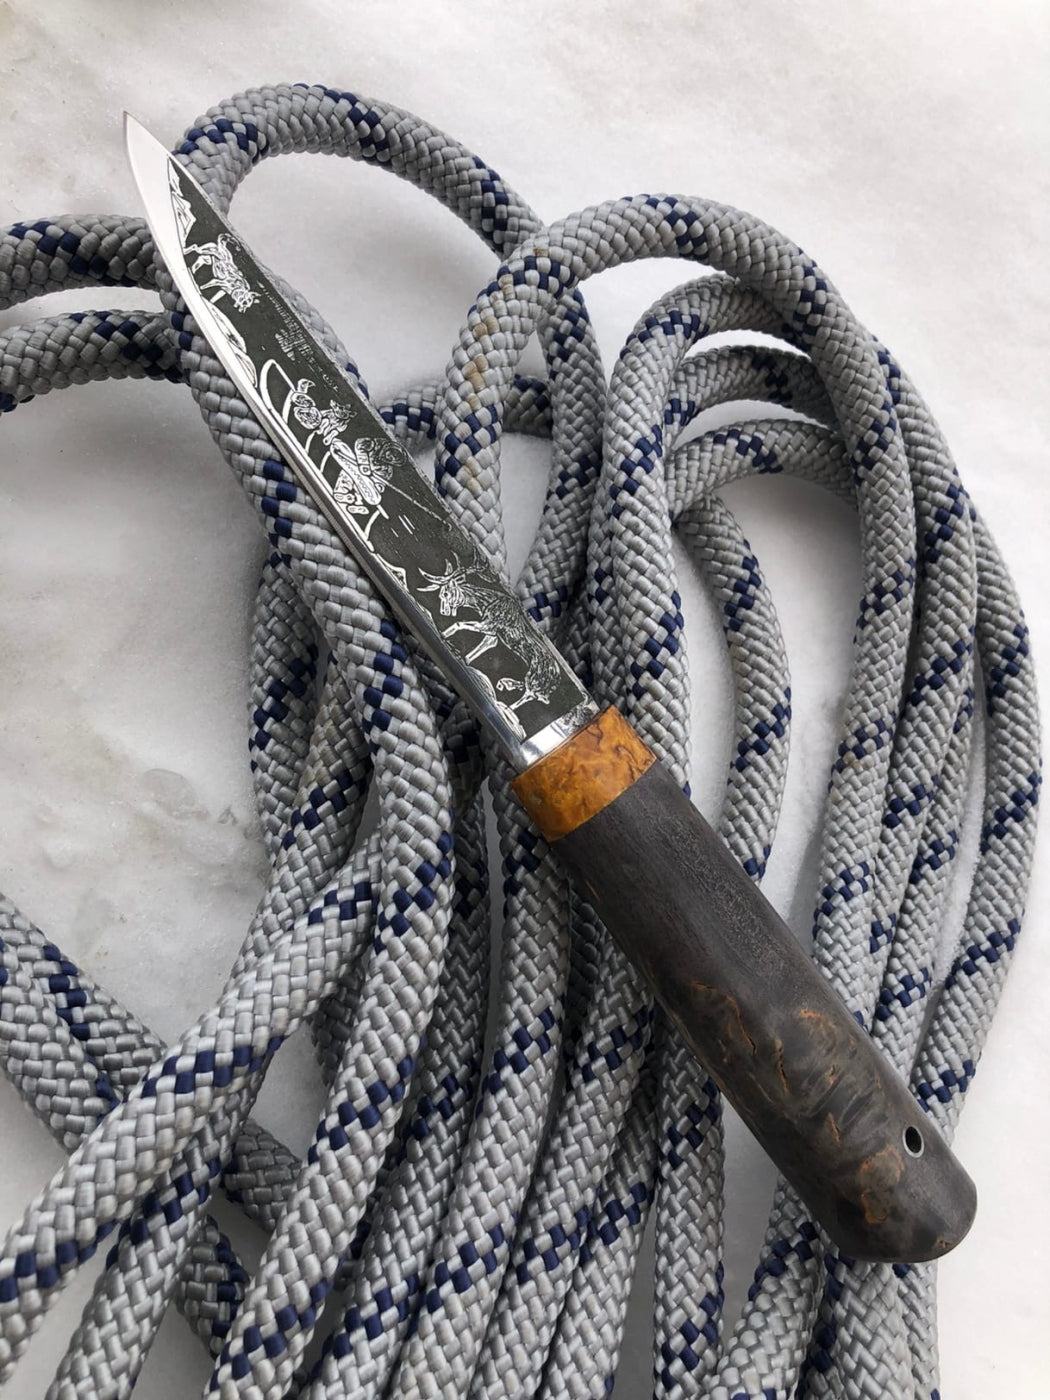 Cuchillo de Caza Yakuto con Grabado Artistico